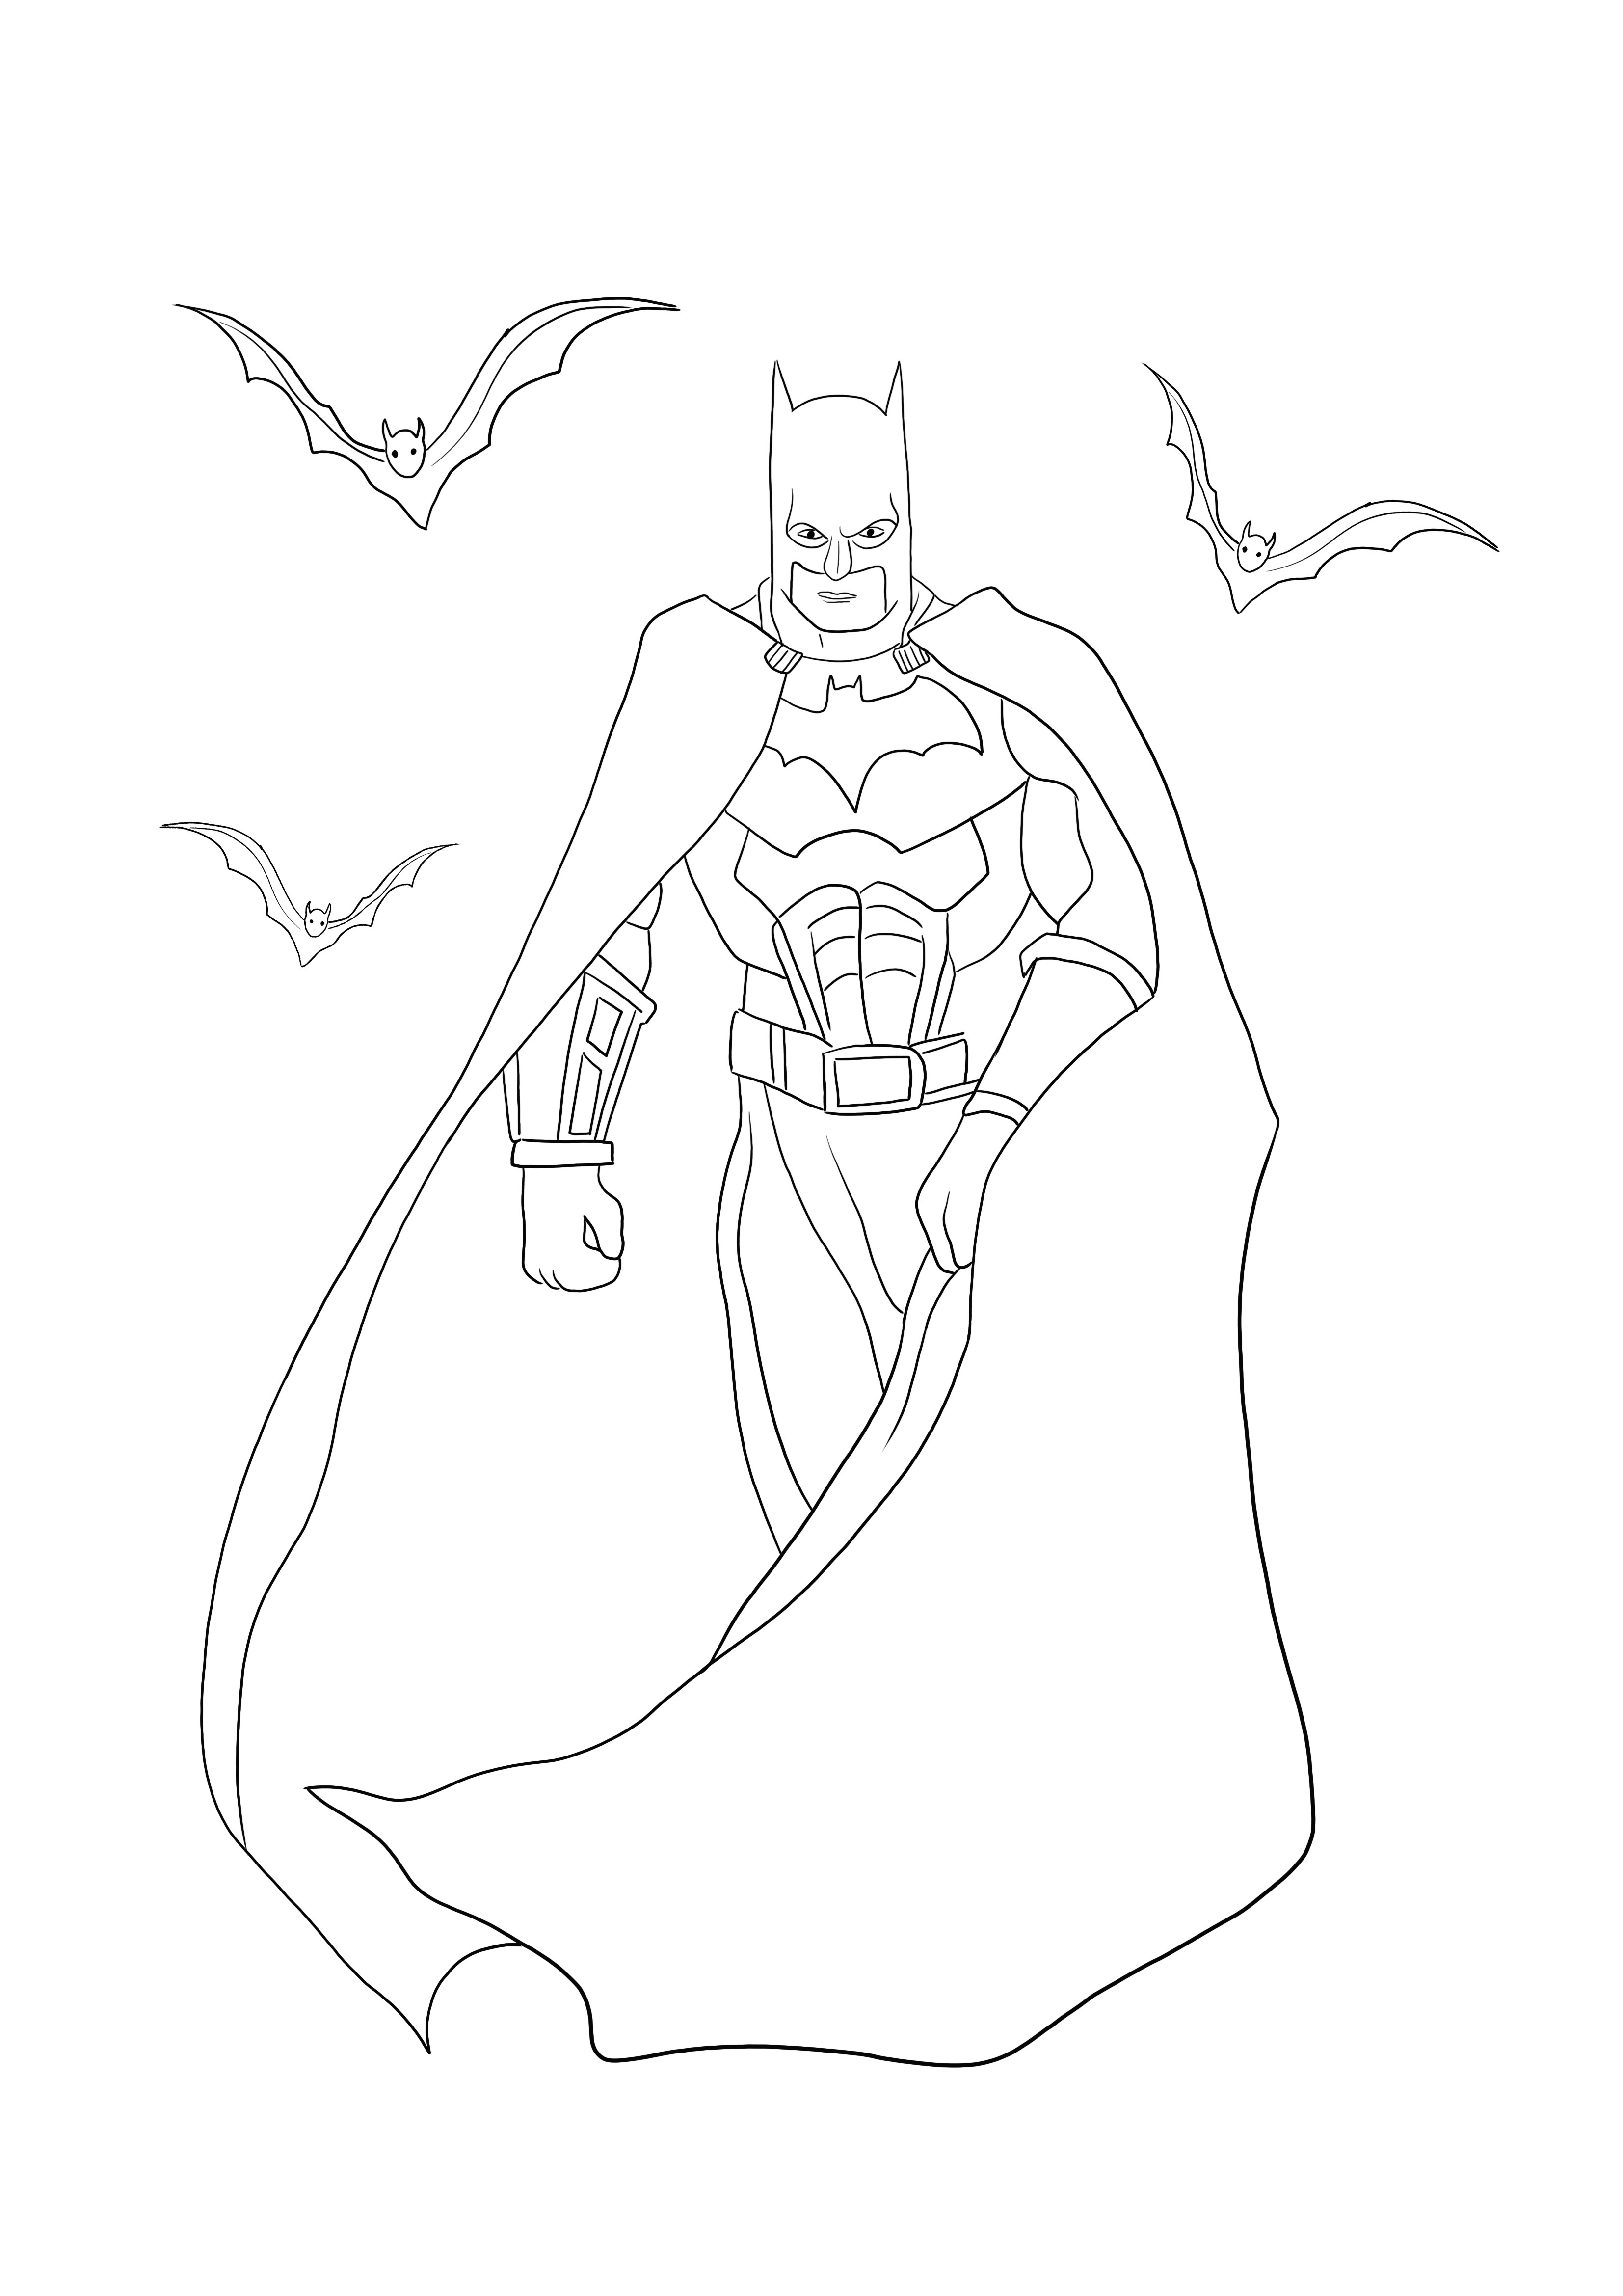 Batman with Bats -värityssivu on ladattavissa tai tulostettavissa ilmaiseksi pitääksesi hauskaa